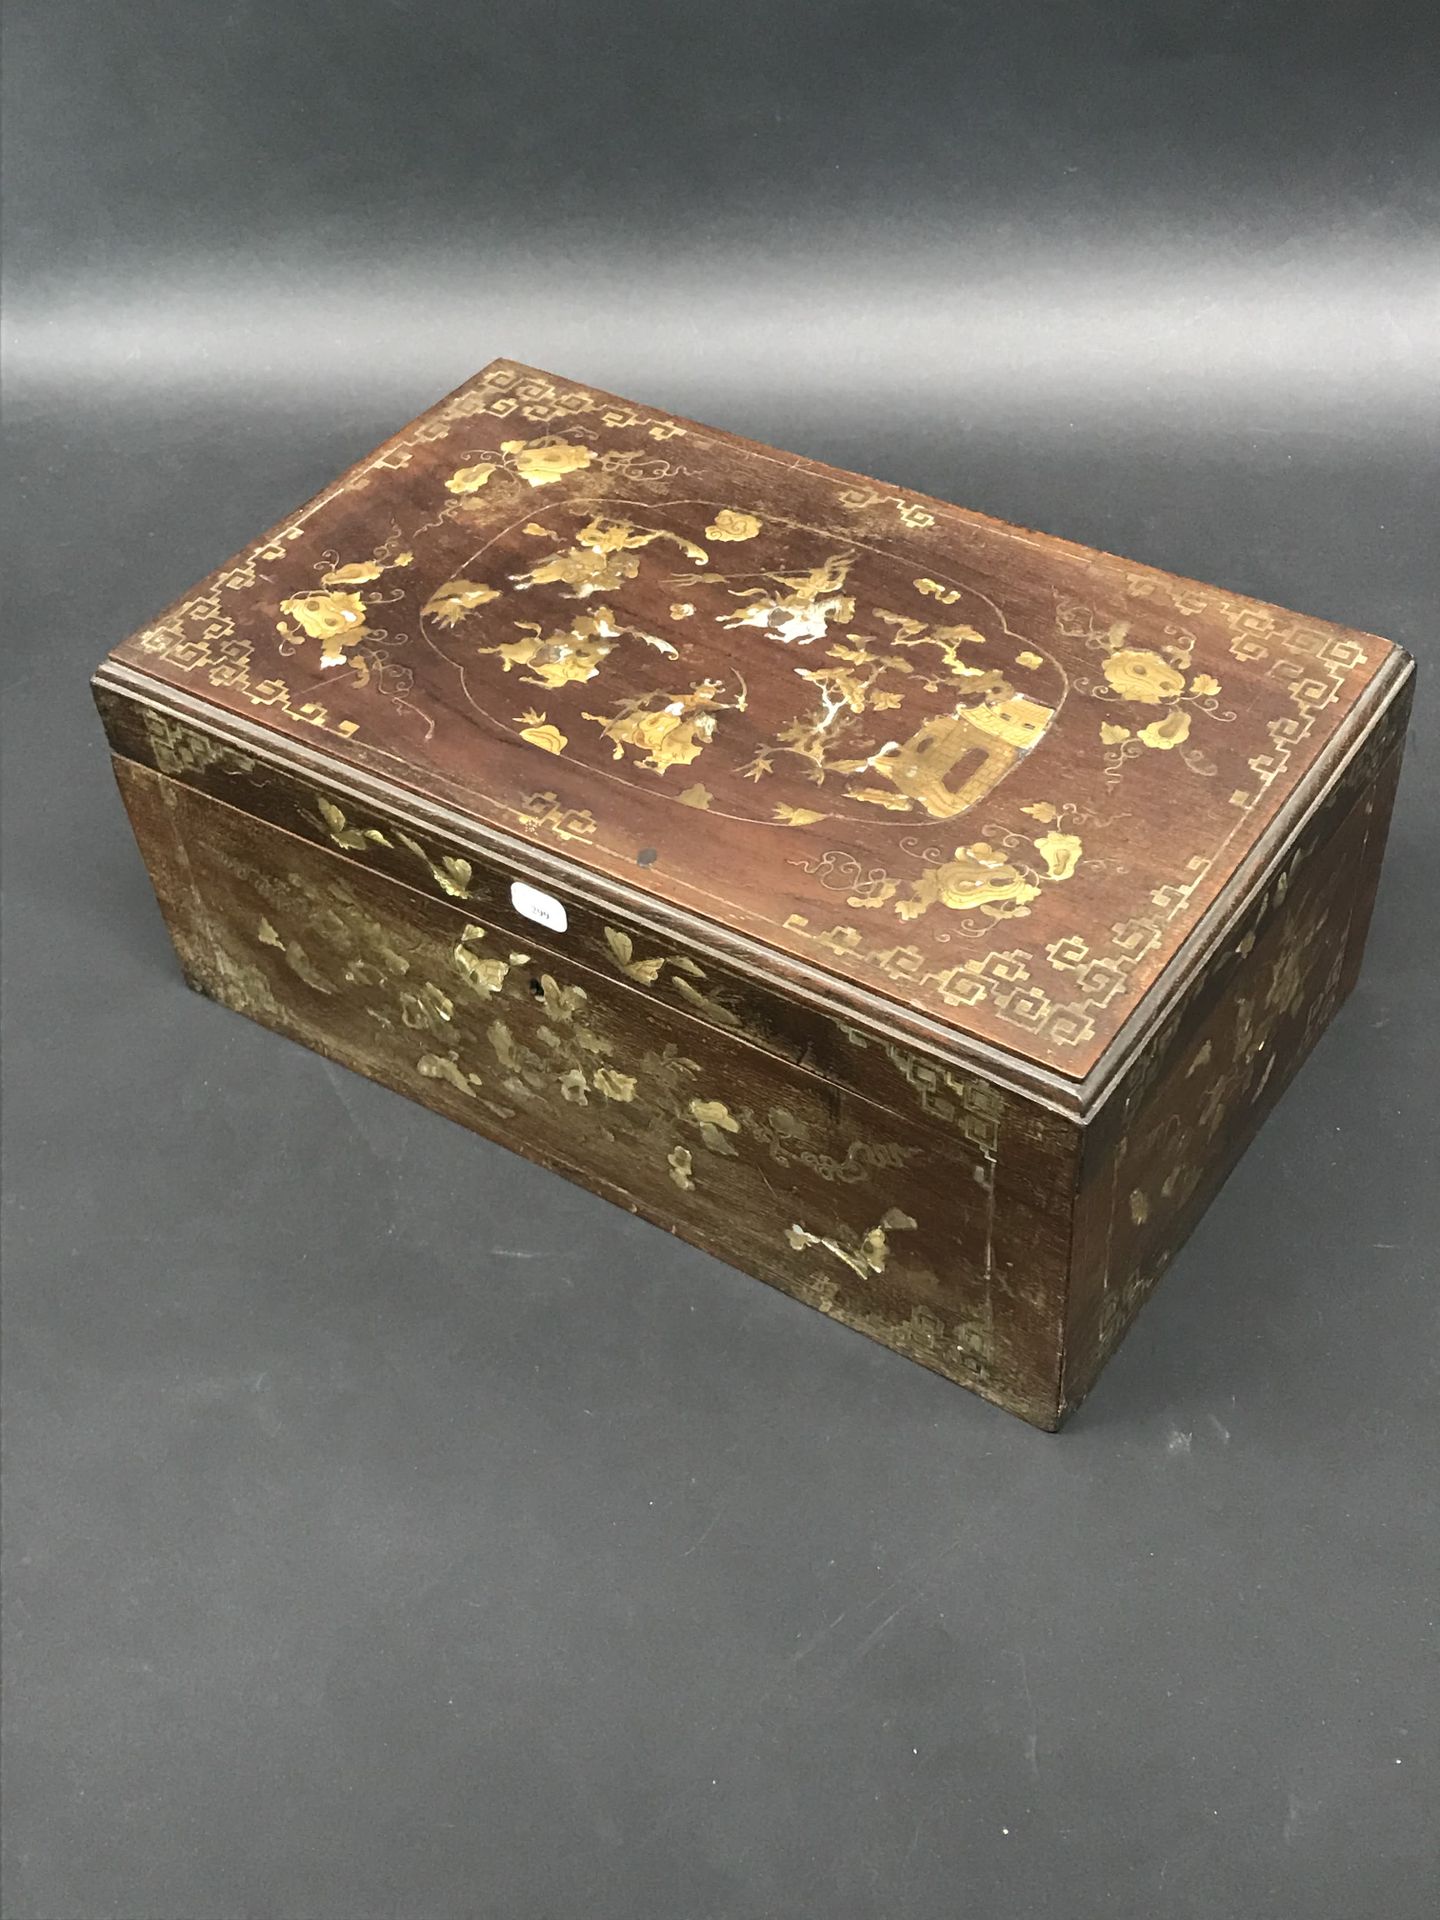 Null 镶嵌着珍珠母的木盒，装饰着花和蝴蝶的斗士和树枝。

印度支那的作品，19世纪末

14 x 33 x 20厘米

(裂缝和破损)